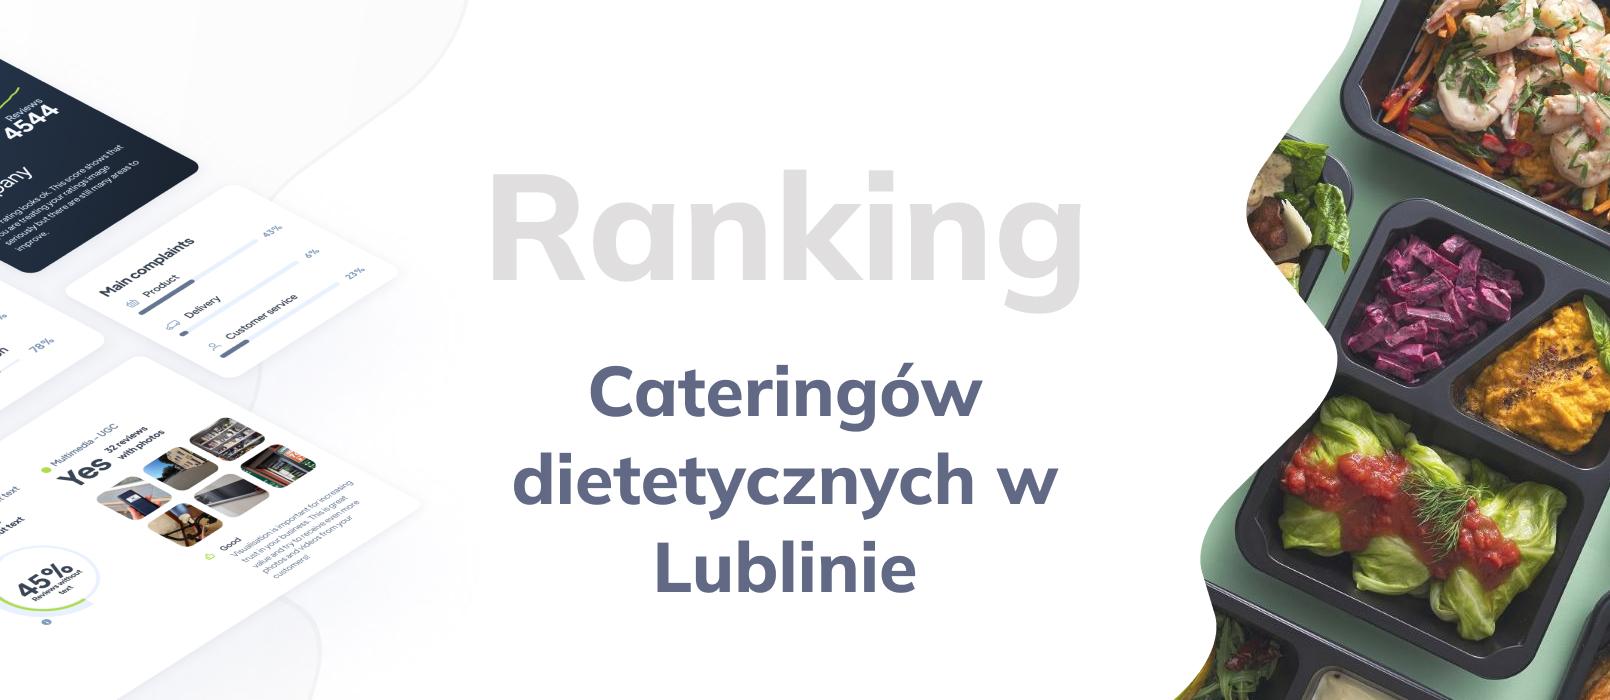 Cateringi dietetyczne w Lublinie - ranking TOP 10